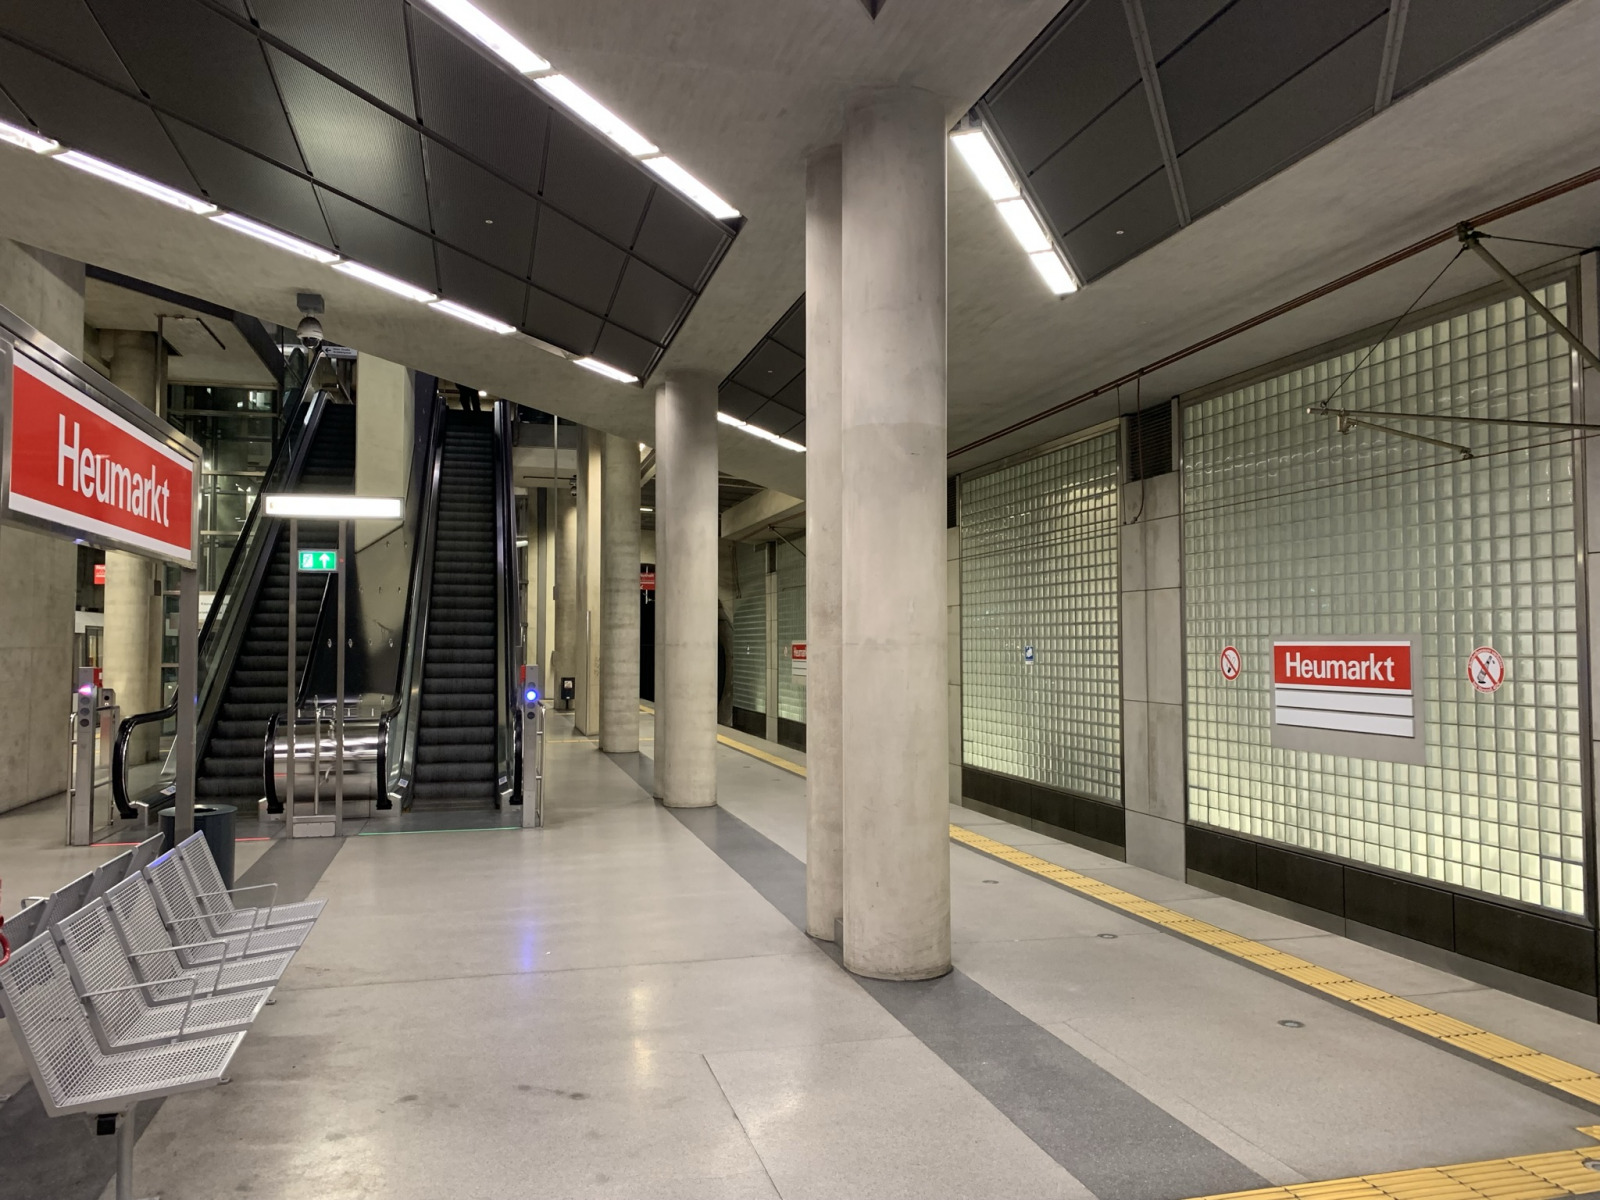 Die leere, verlassene Station Heumarkt. Und trotzdem fährt eine Bahn durch. Zumindest akustisch. Bild: Uli Kievernagel